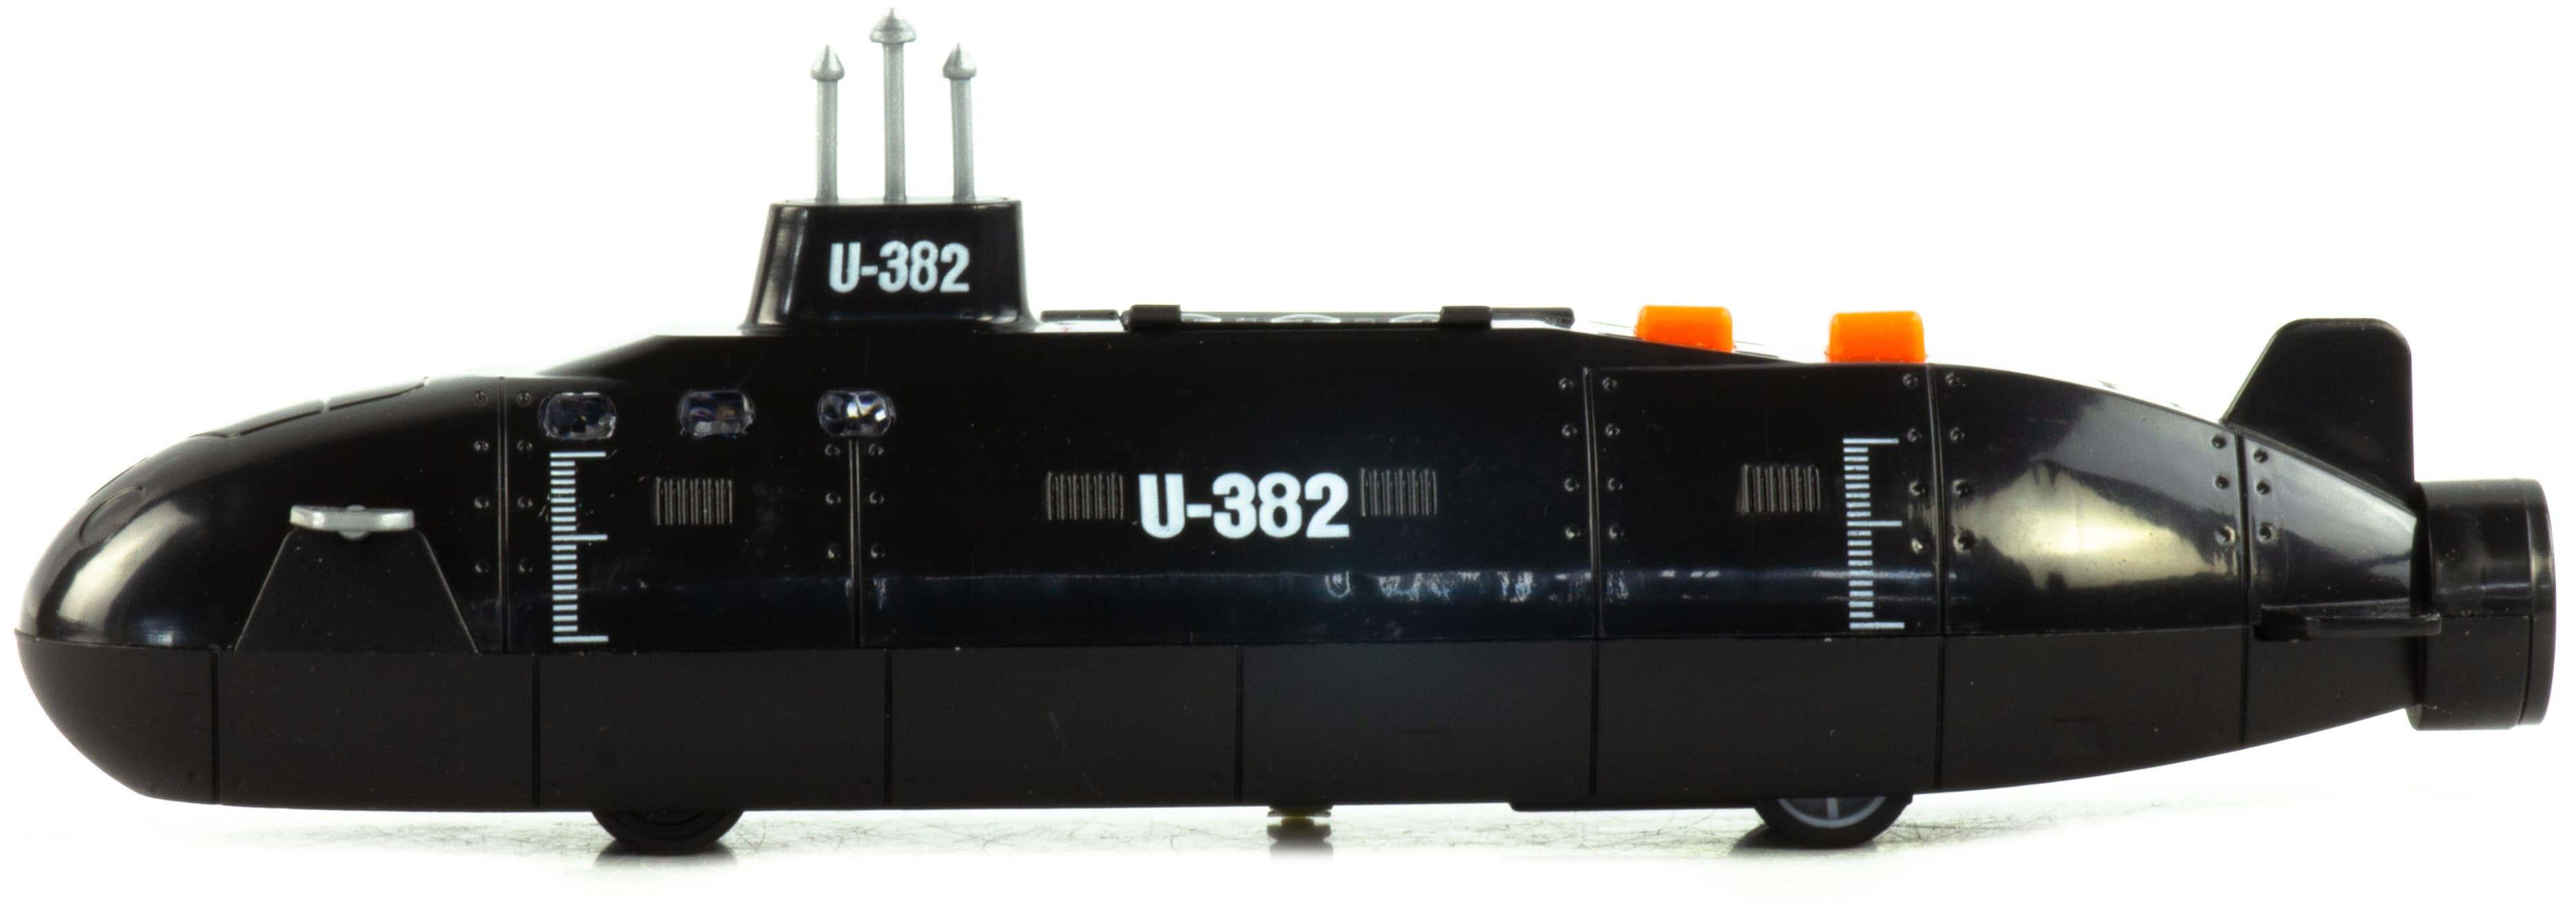 Металлическая подводная лодка «U382» со световыми и звуковыми эффектами, JL640 / Черный